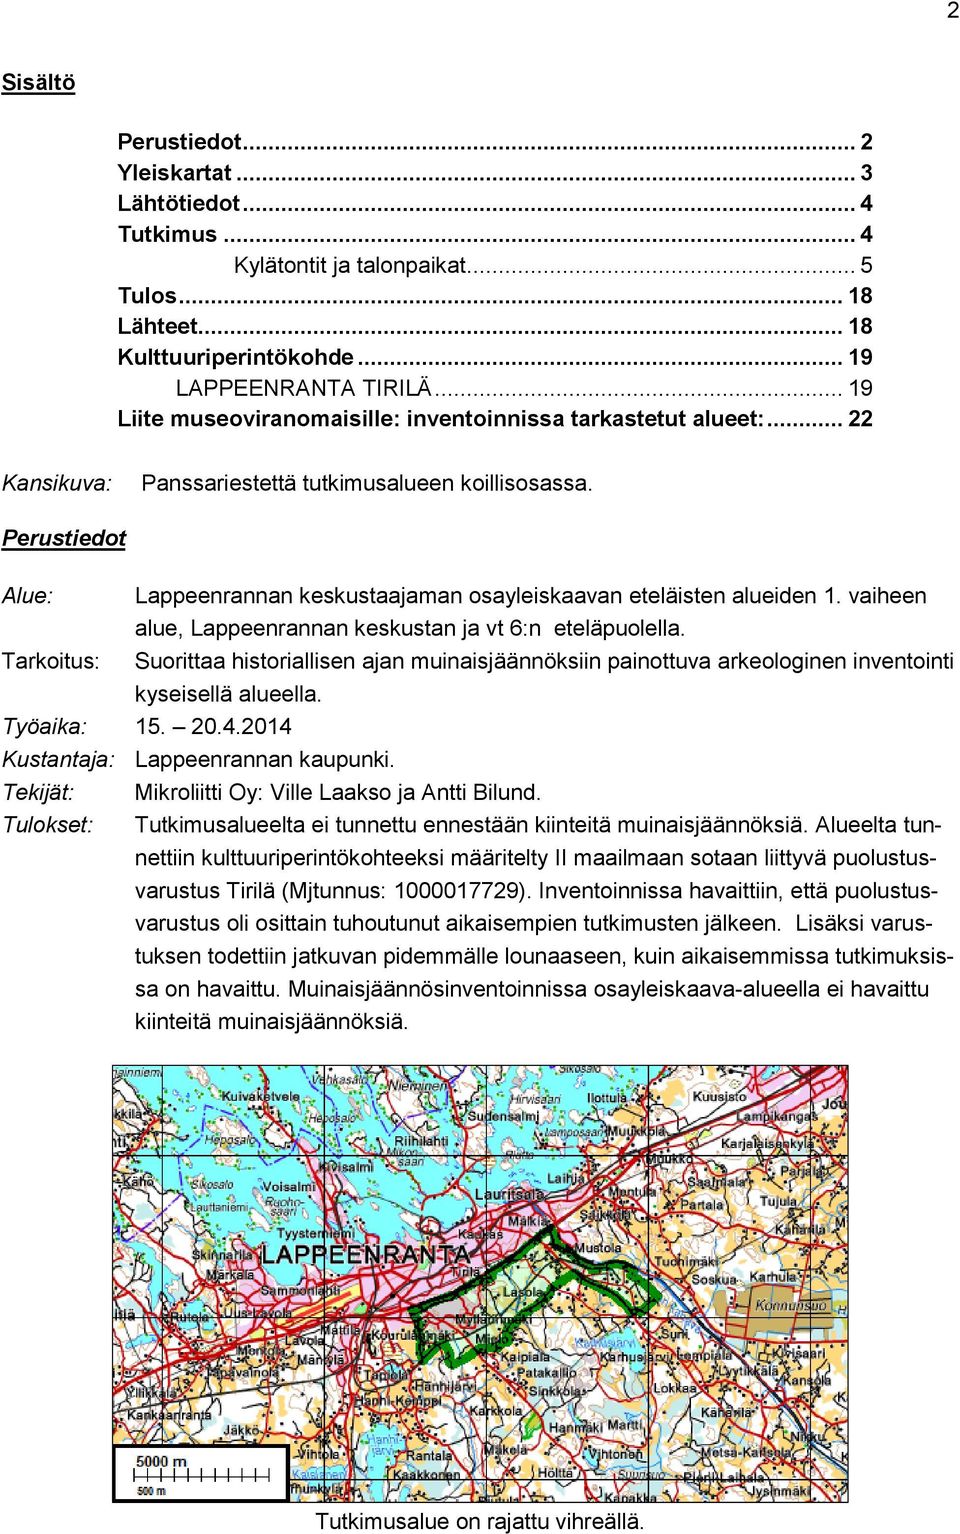 Perustiedot Alue: Lappeenrannan keskustaajaman osayleiskaavan eteläisten alueiden 1. vaiheen alue, Lappeenrannan keskustan ja vt 6:n eteläpuolella.